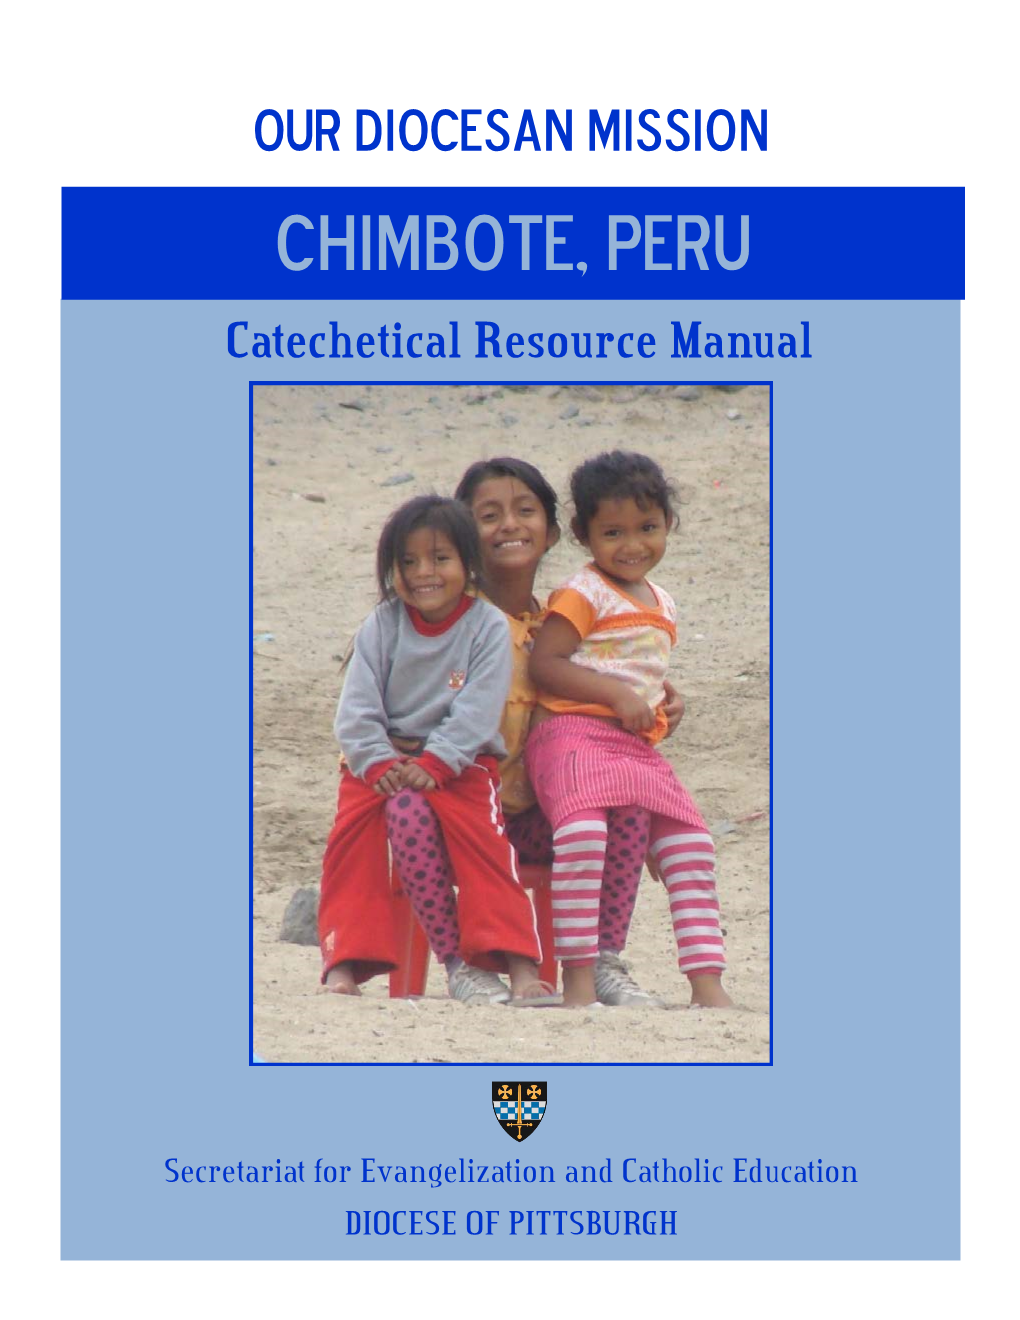 Chimbote, Peru Catechetical Resource Manual